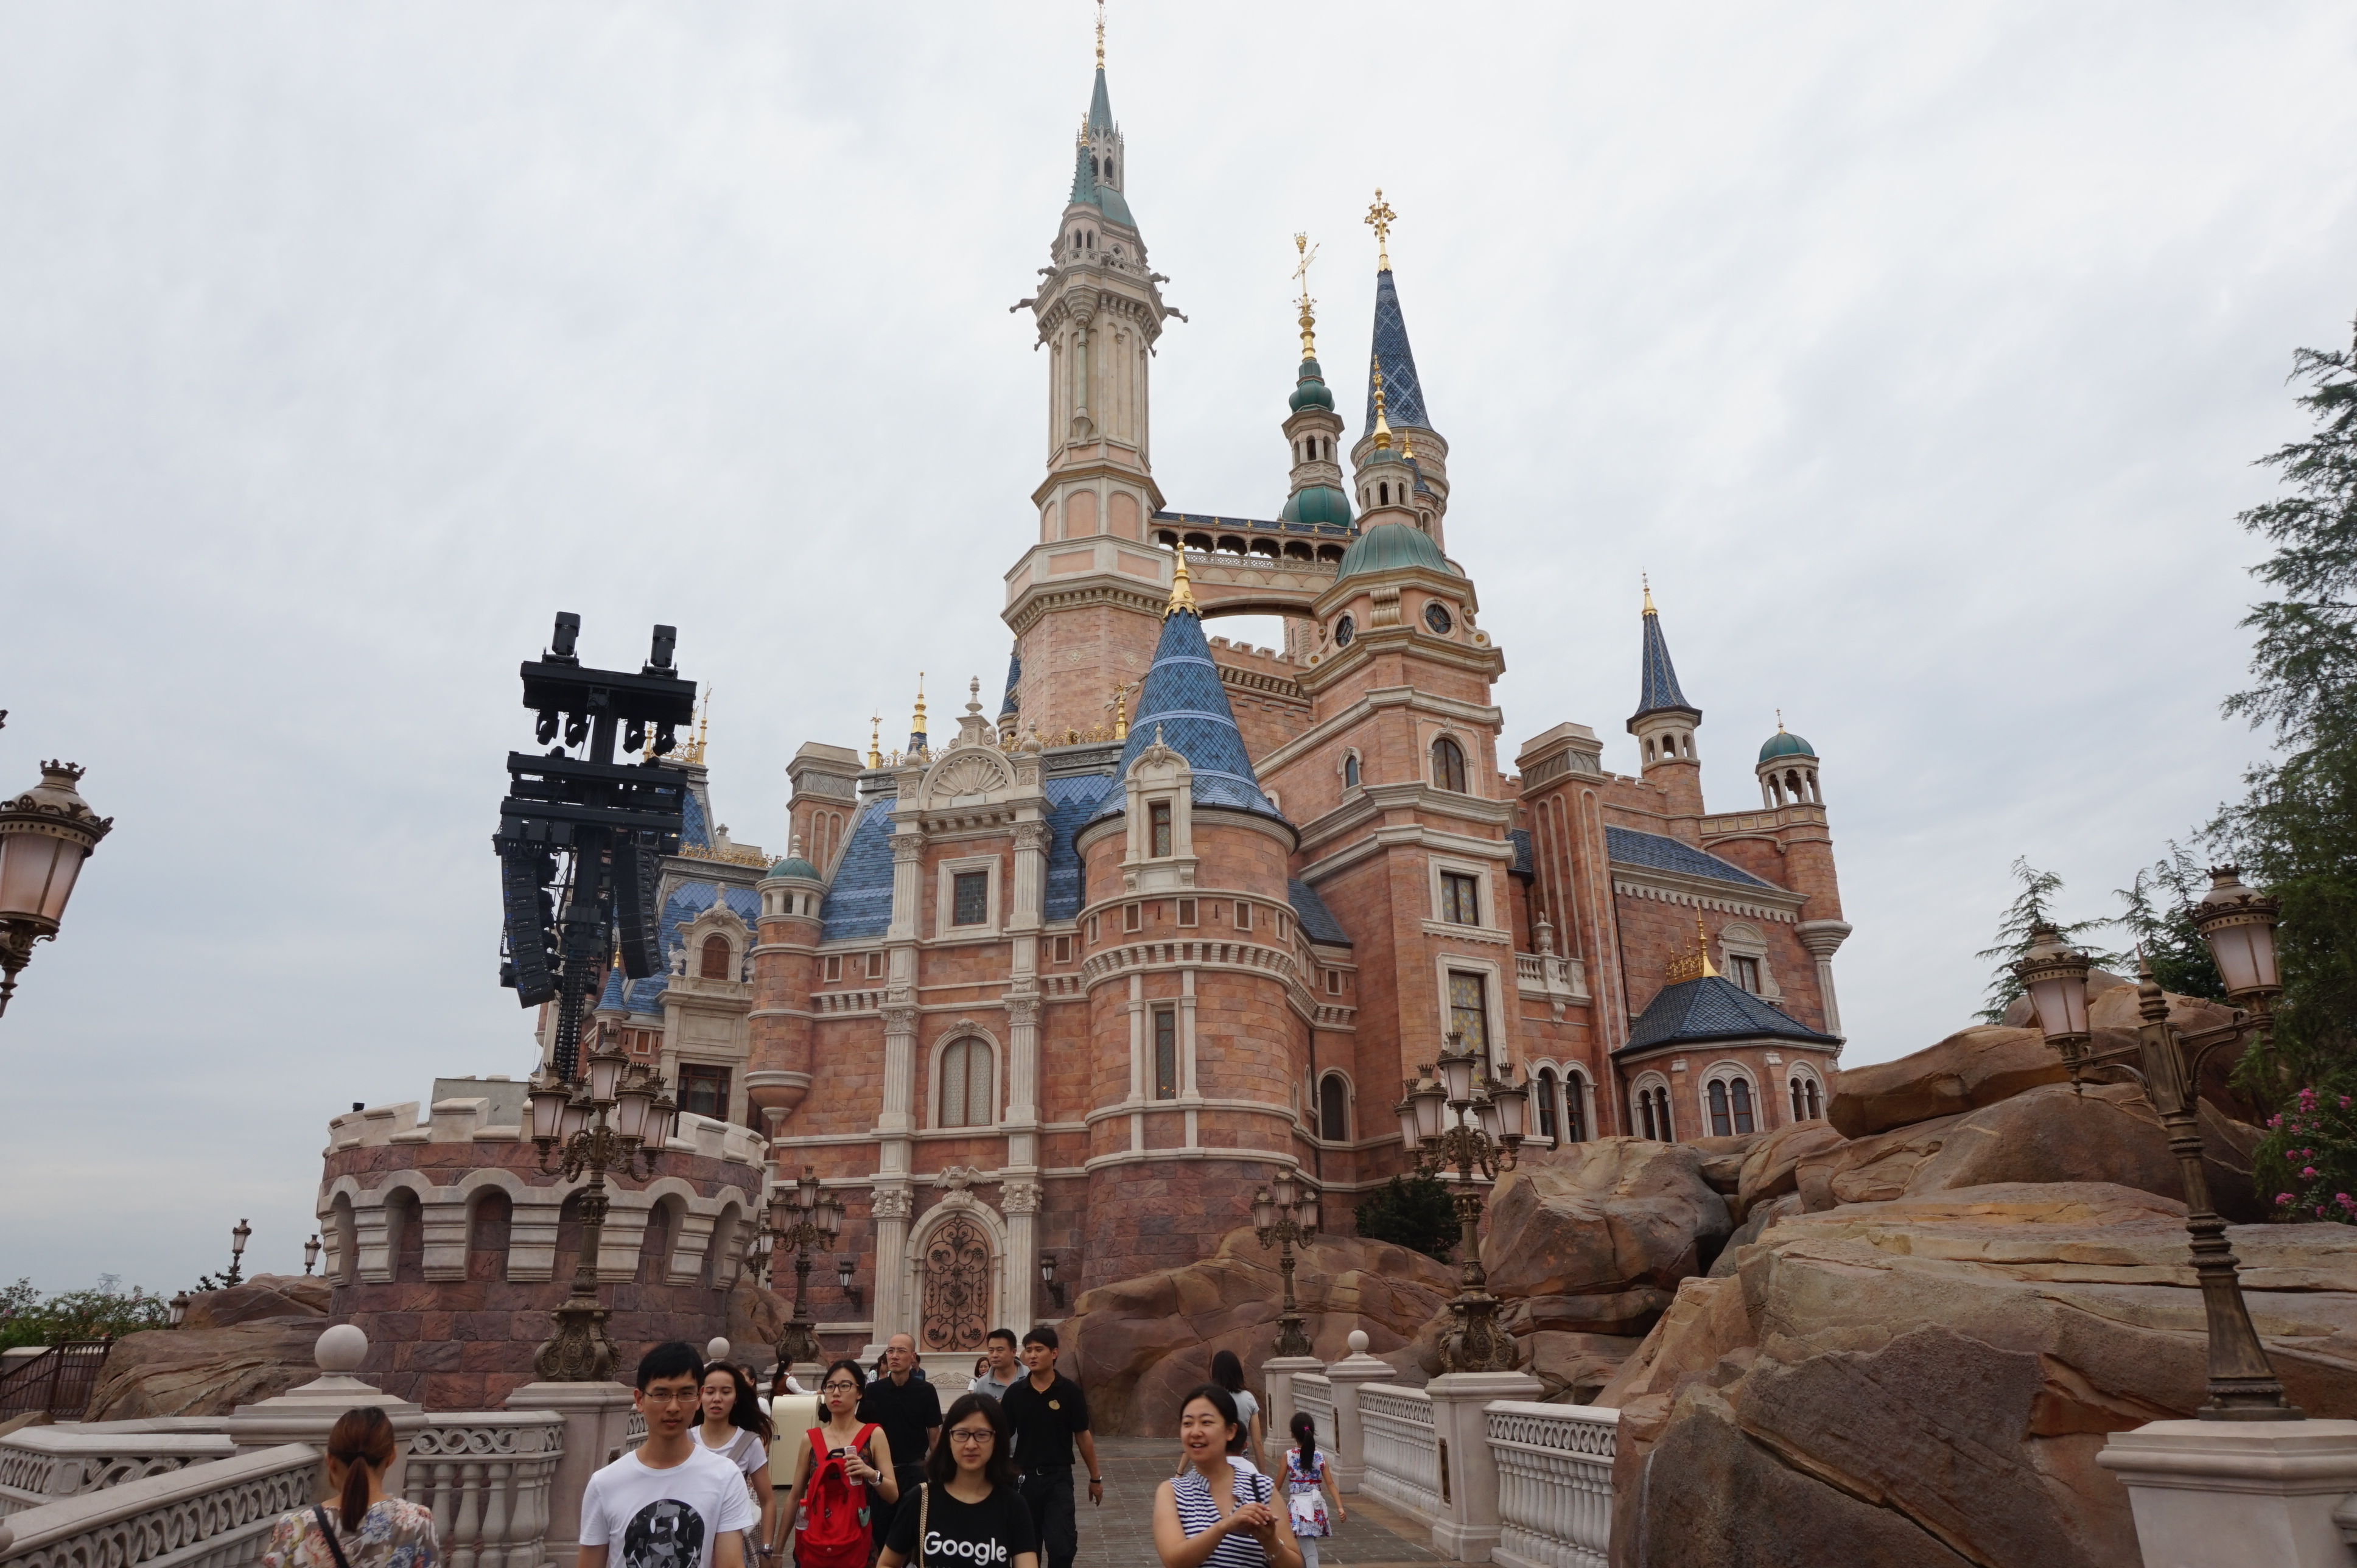 奇幻童话城堡